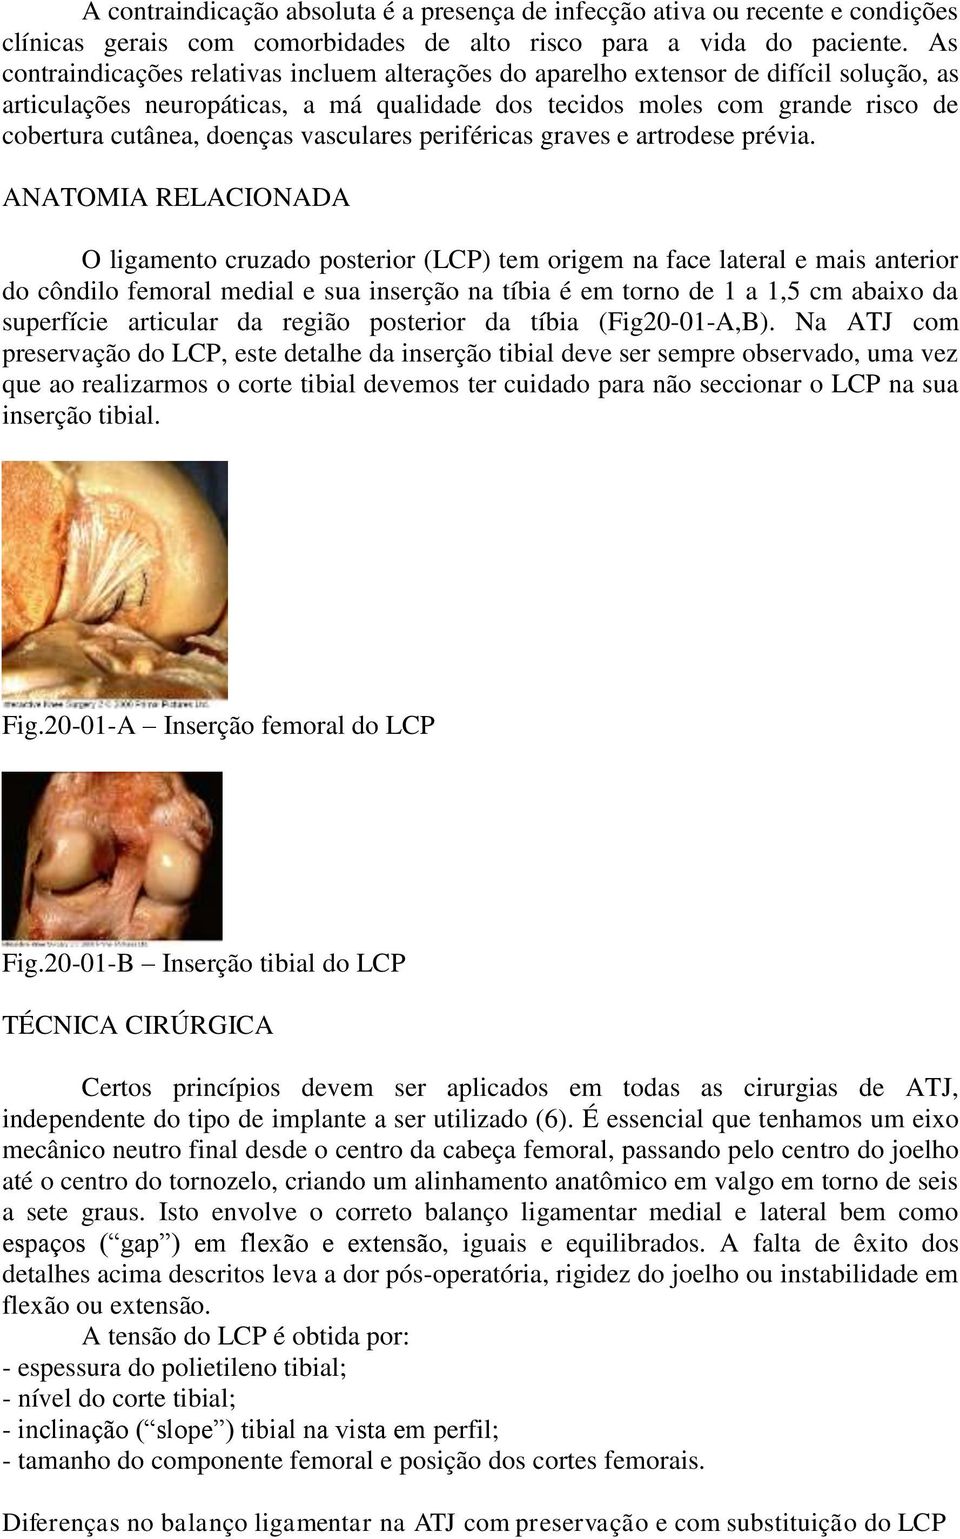 vasculares periféricas graves e artrodese prévia.